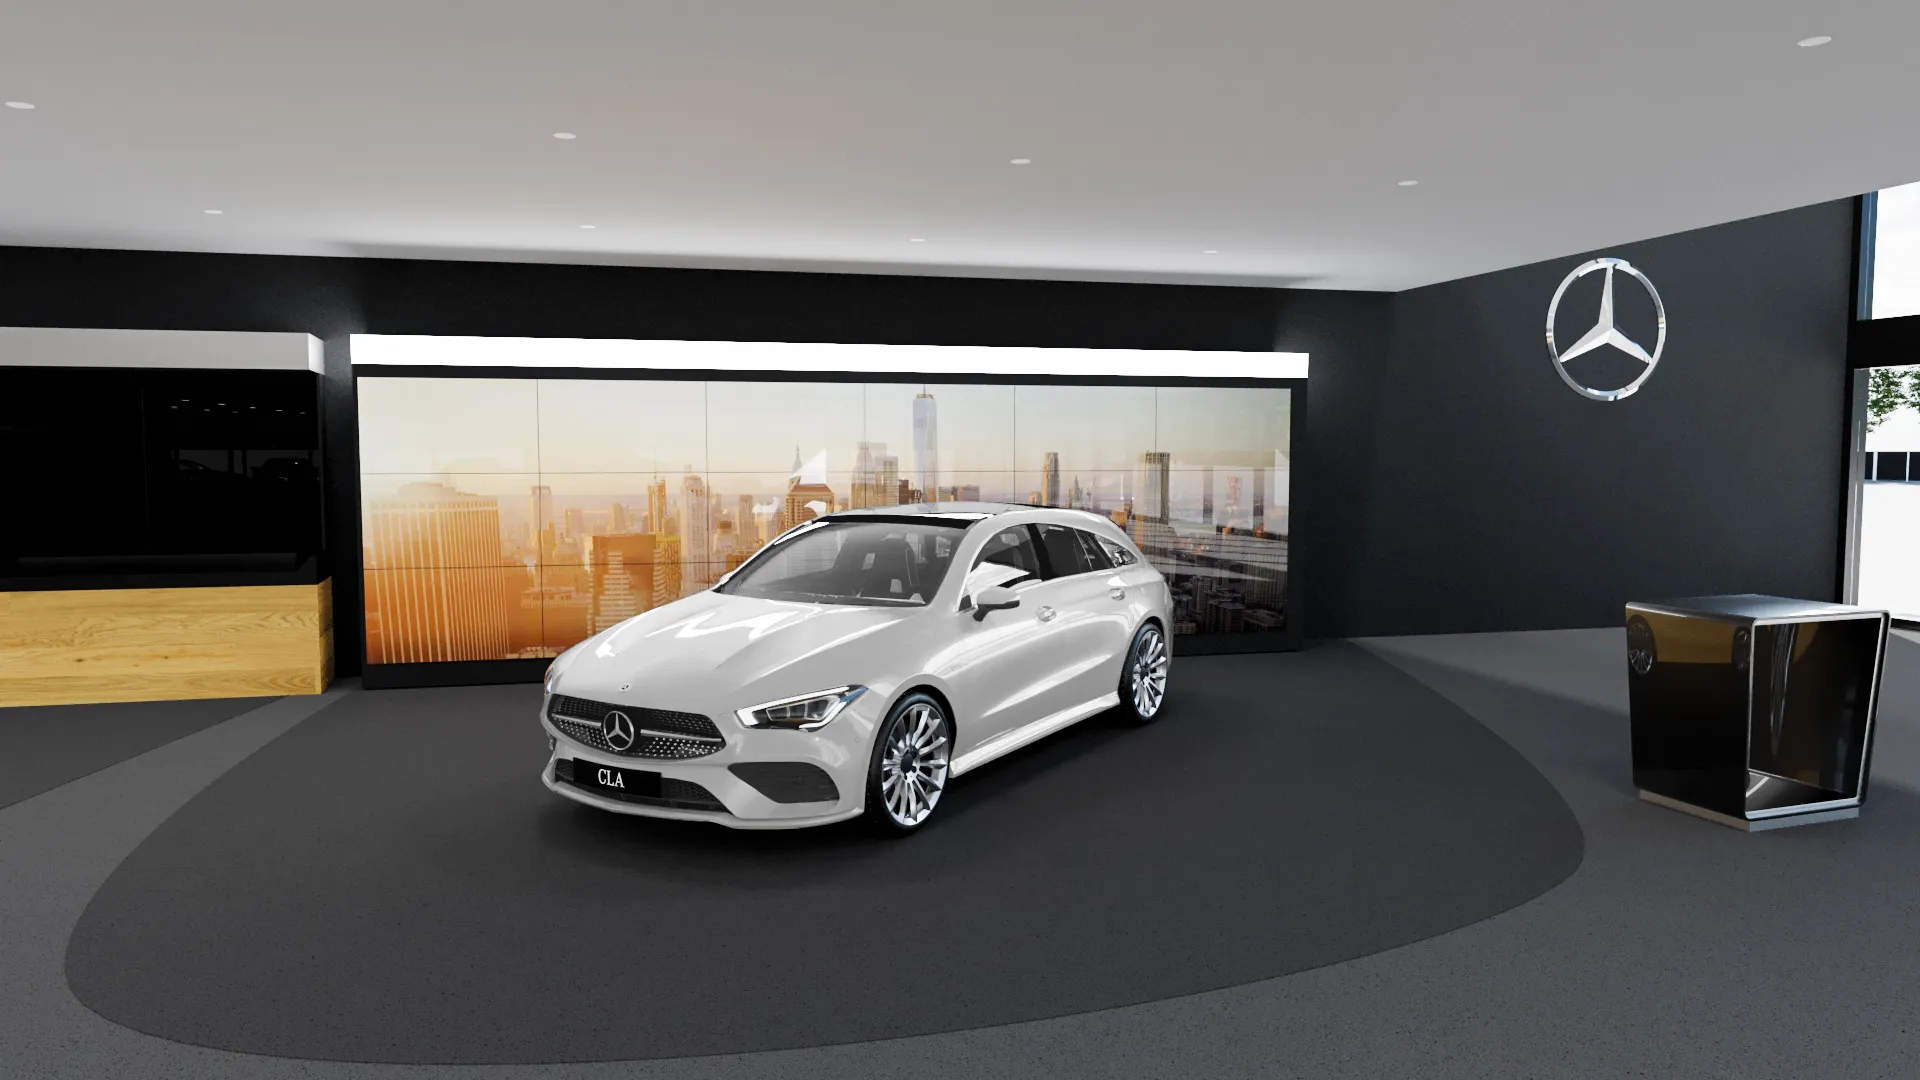 3D modellierter Showroom in dem sich ein weißer Mercedes befindet